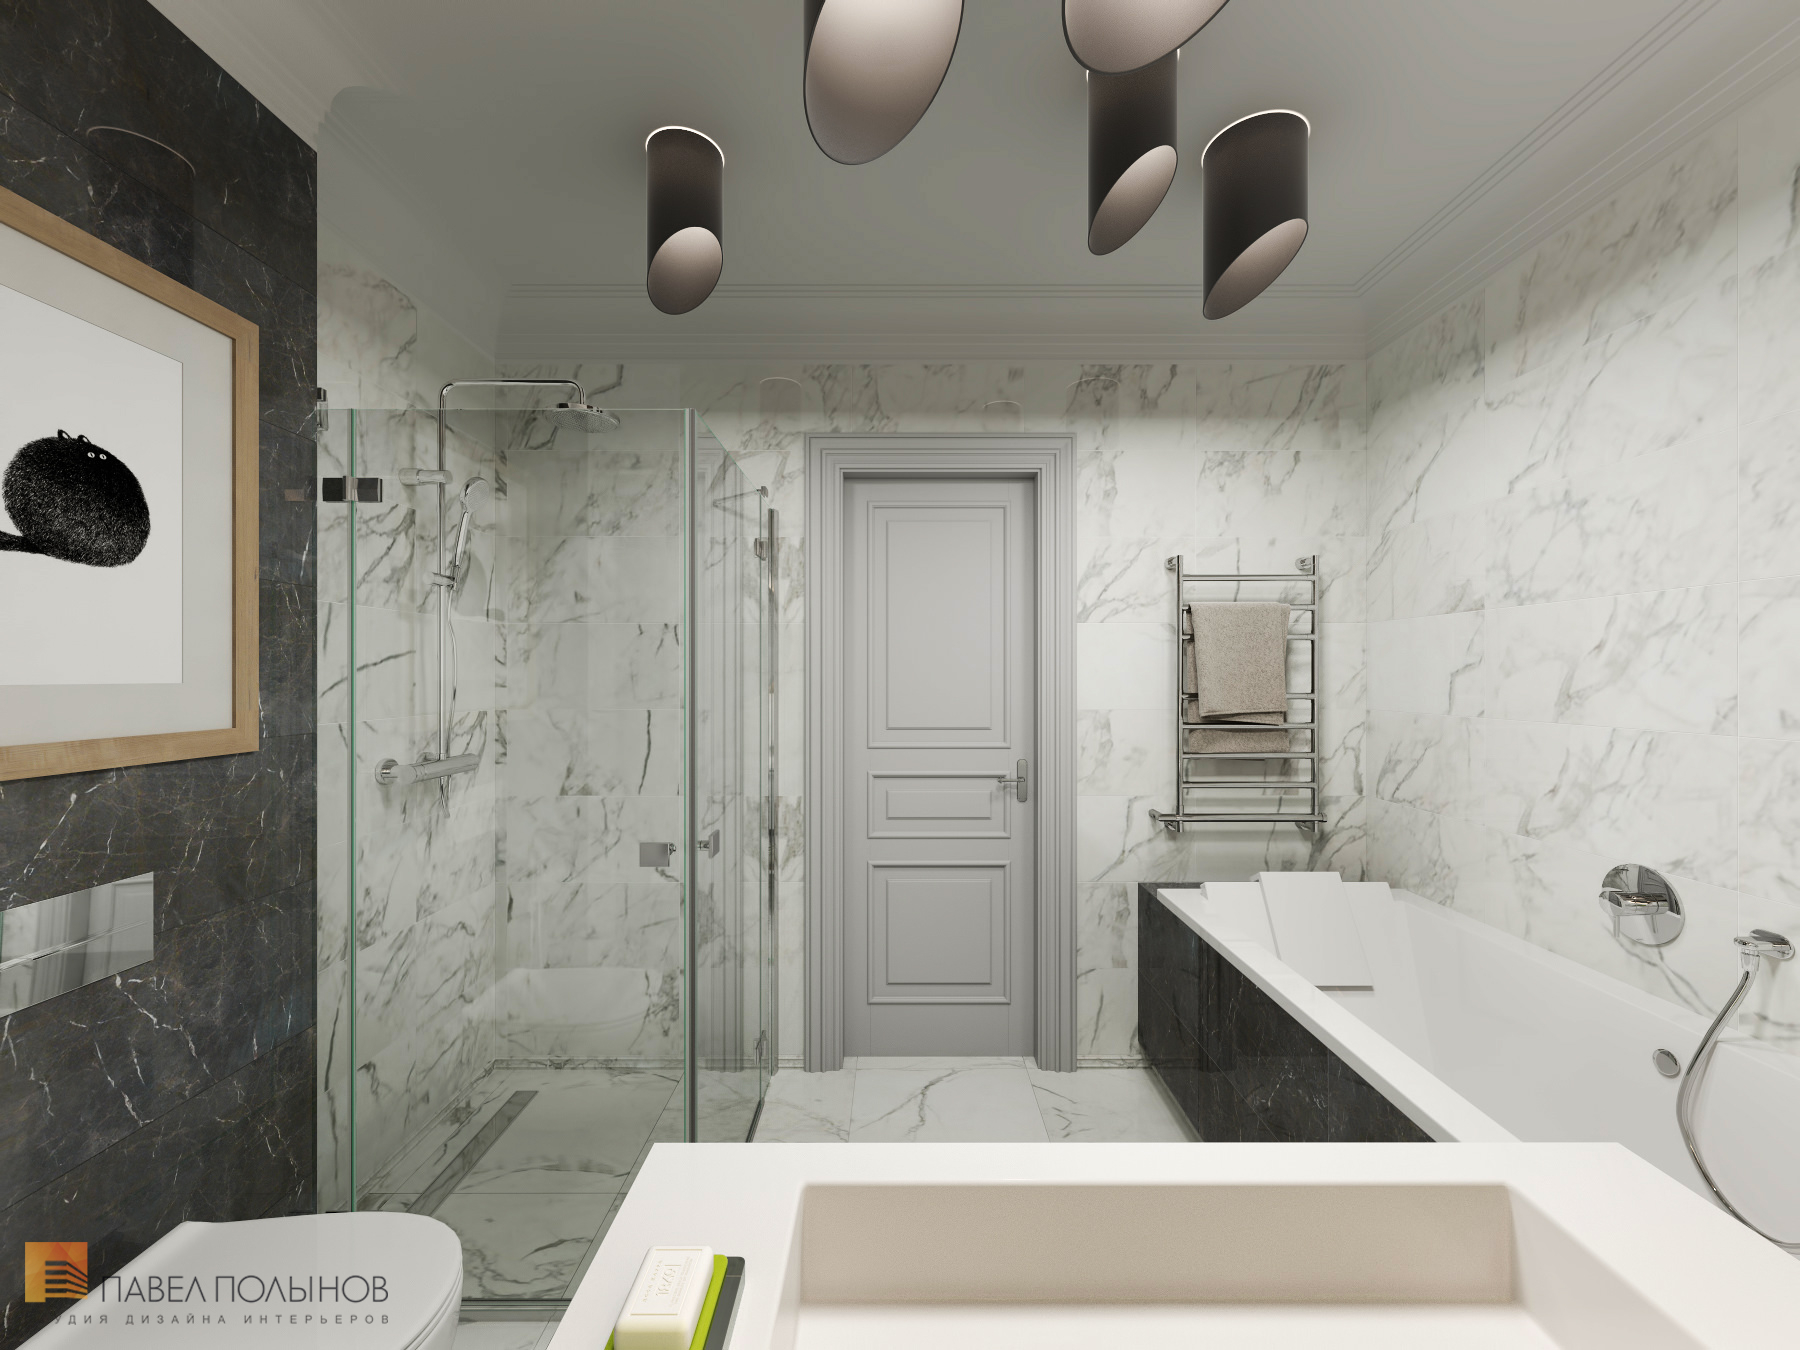 Фото дизайн ванной комнаты из проекта «Интерьер квартиры в стиле неоклассики, ЖК «Парадный квартал», 190 кв.м.»